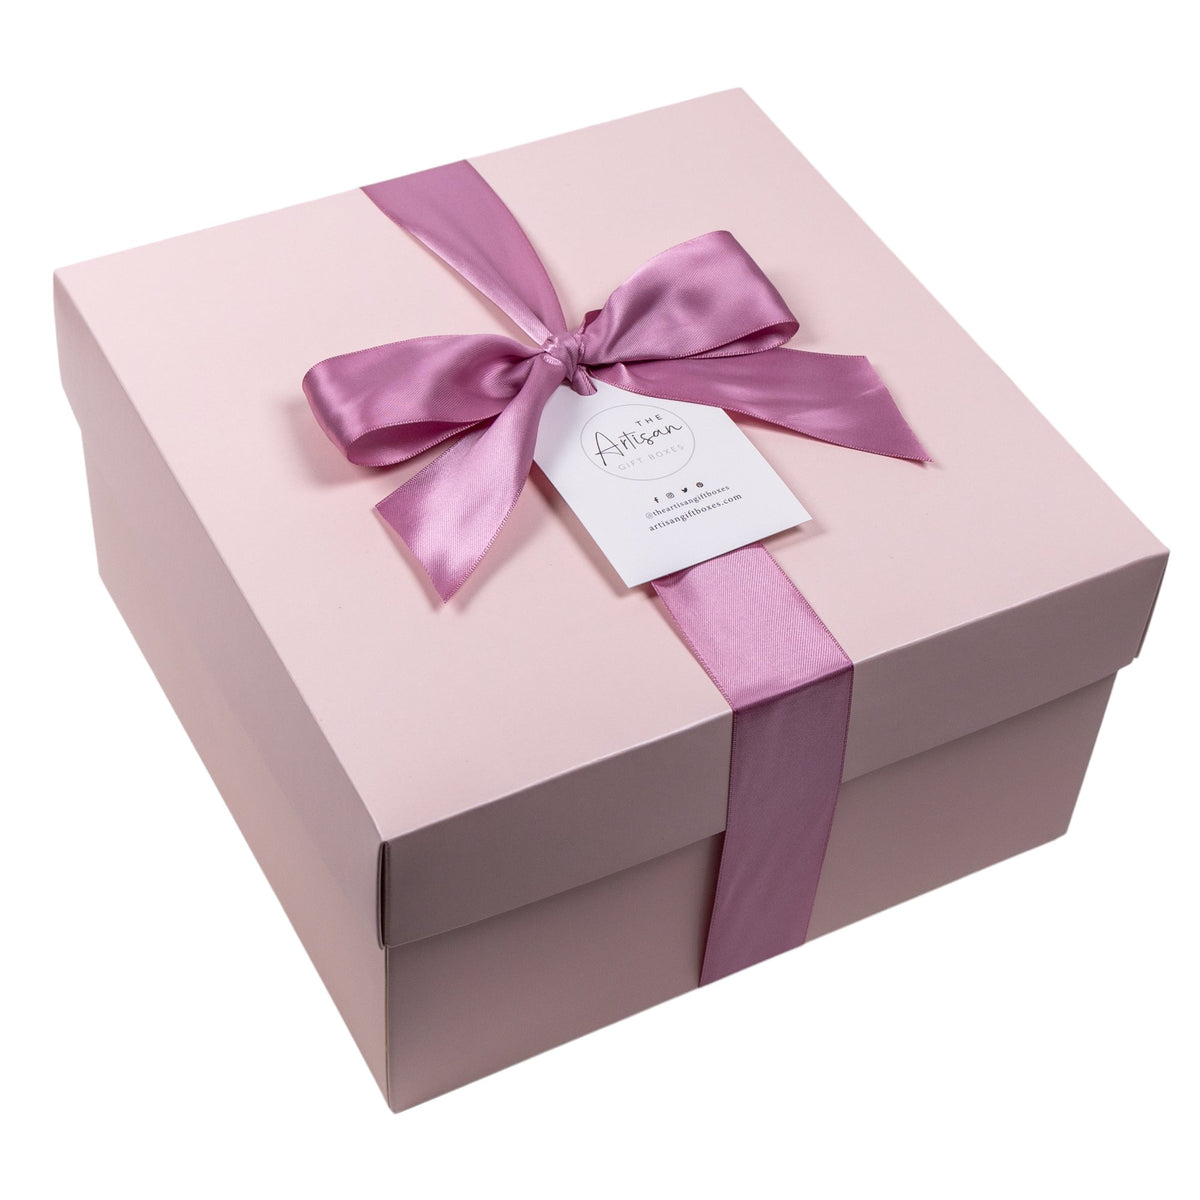 Lavender and Rose Porcelain Mug in Gift Box